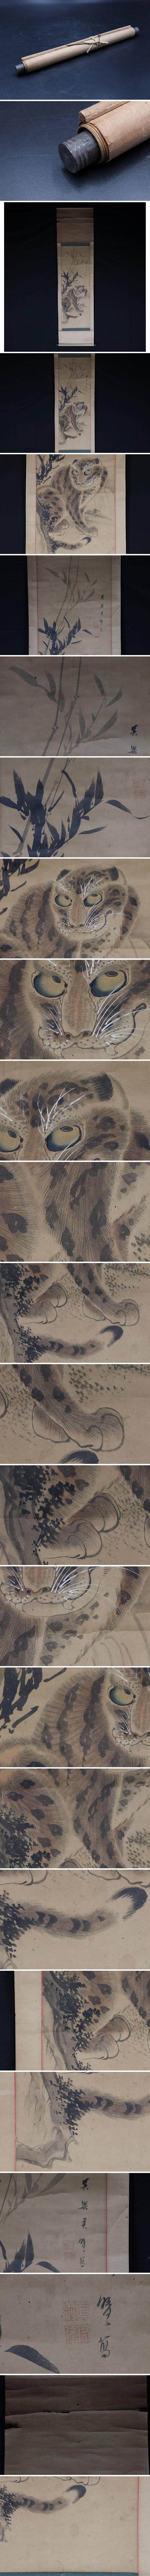 赤字超特価李朝時代「虎之図」肉筆紙本 掛軸 古画 唐物 18〜19世紀 朝鮮骨董 5F29.12A 花鳥、鳥獣